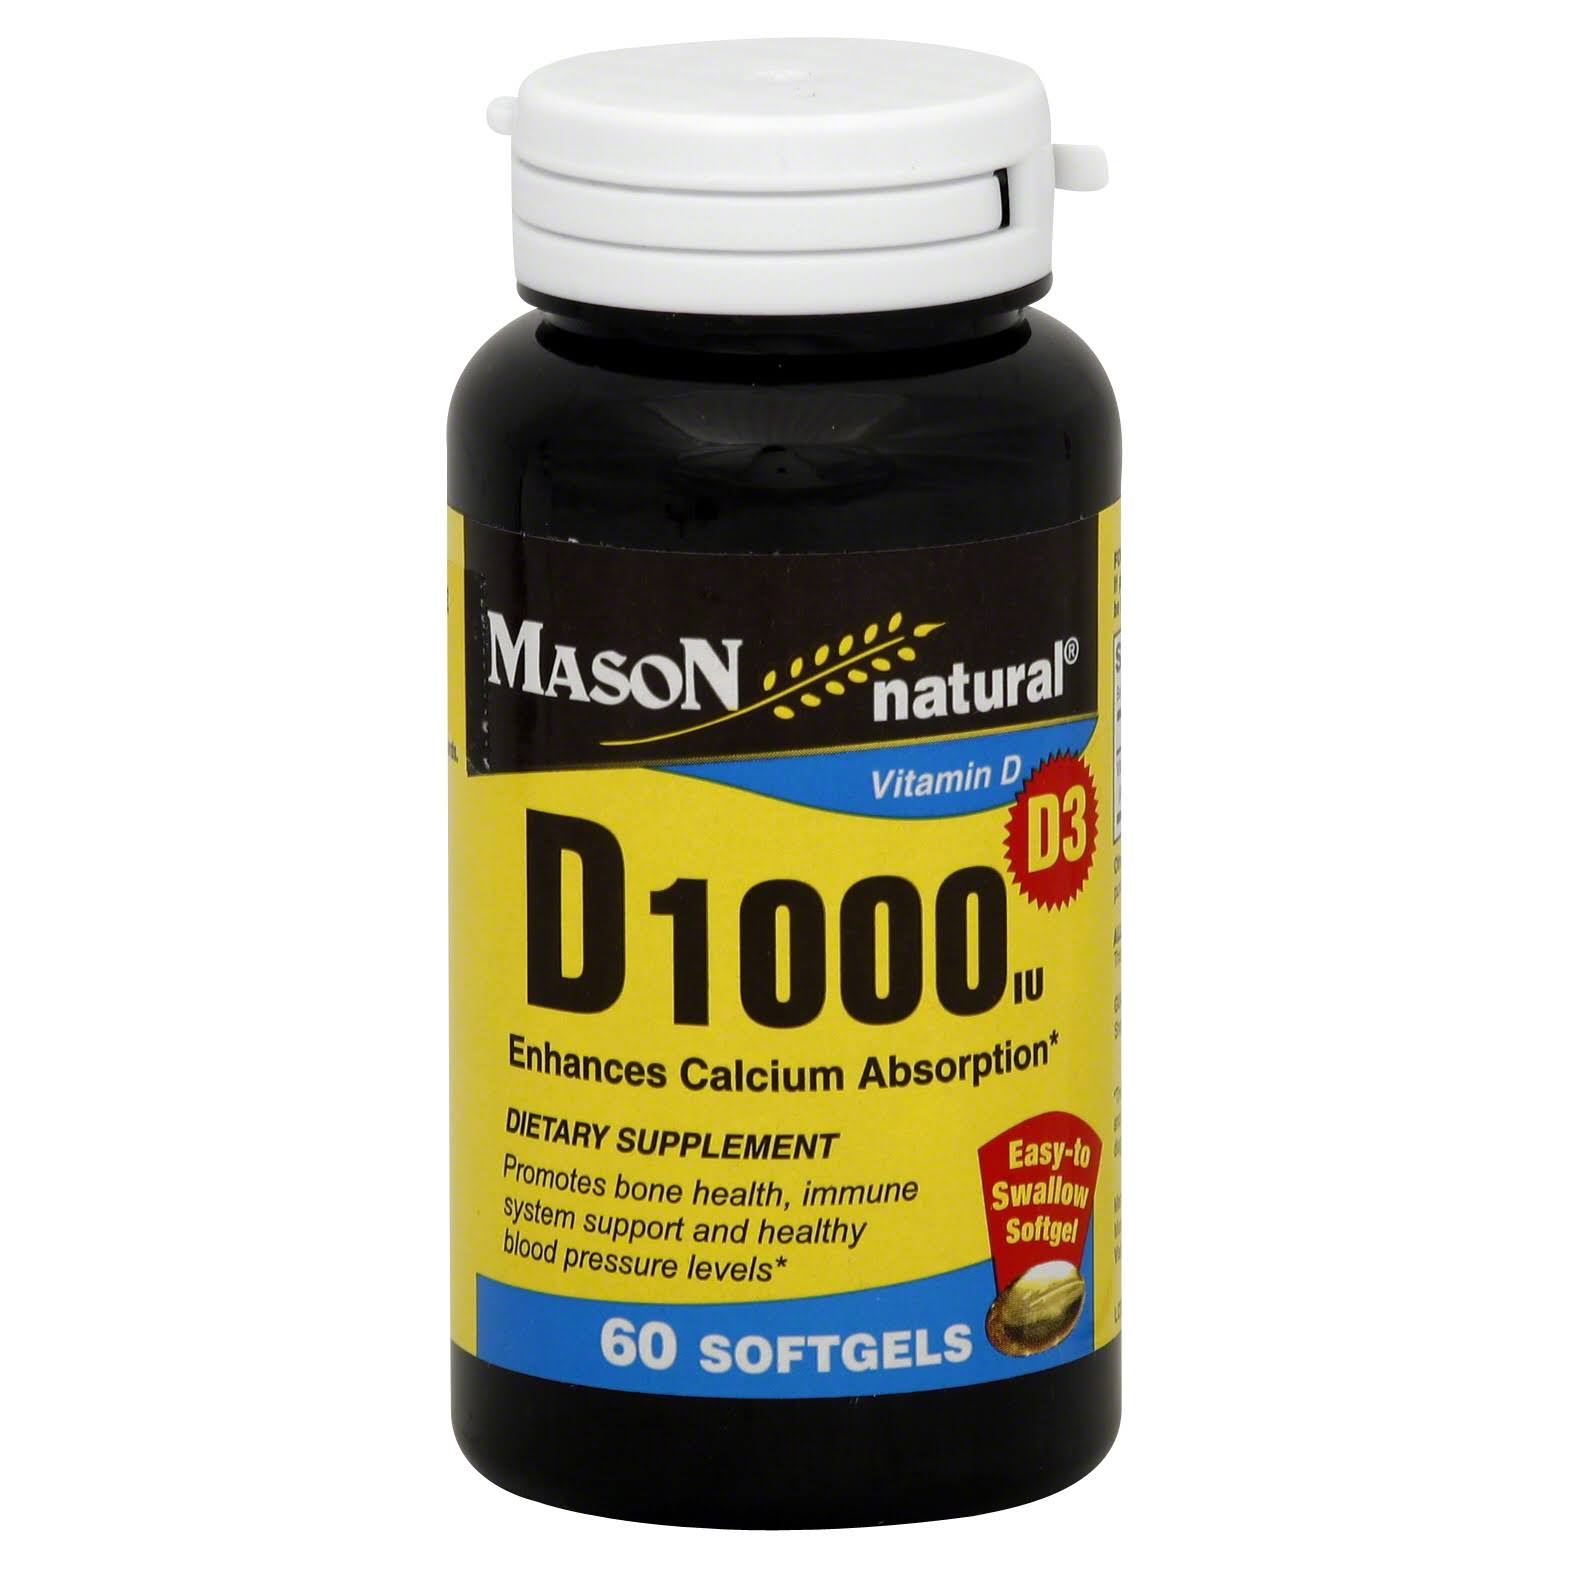 Mason Natural Vitamin D 1000 IU Supplement - 60 Count